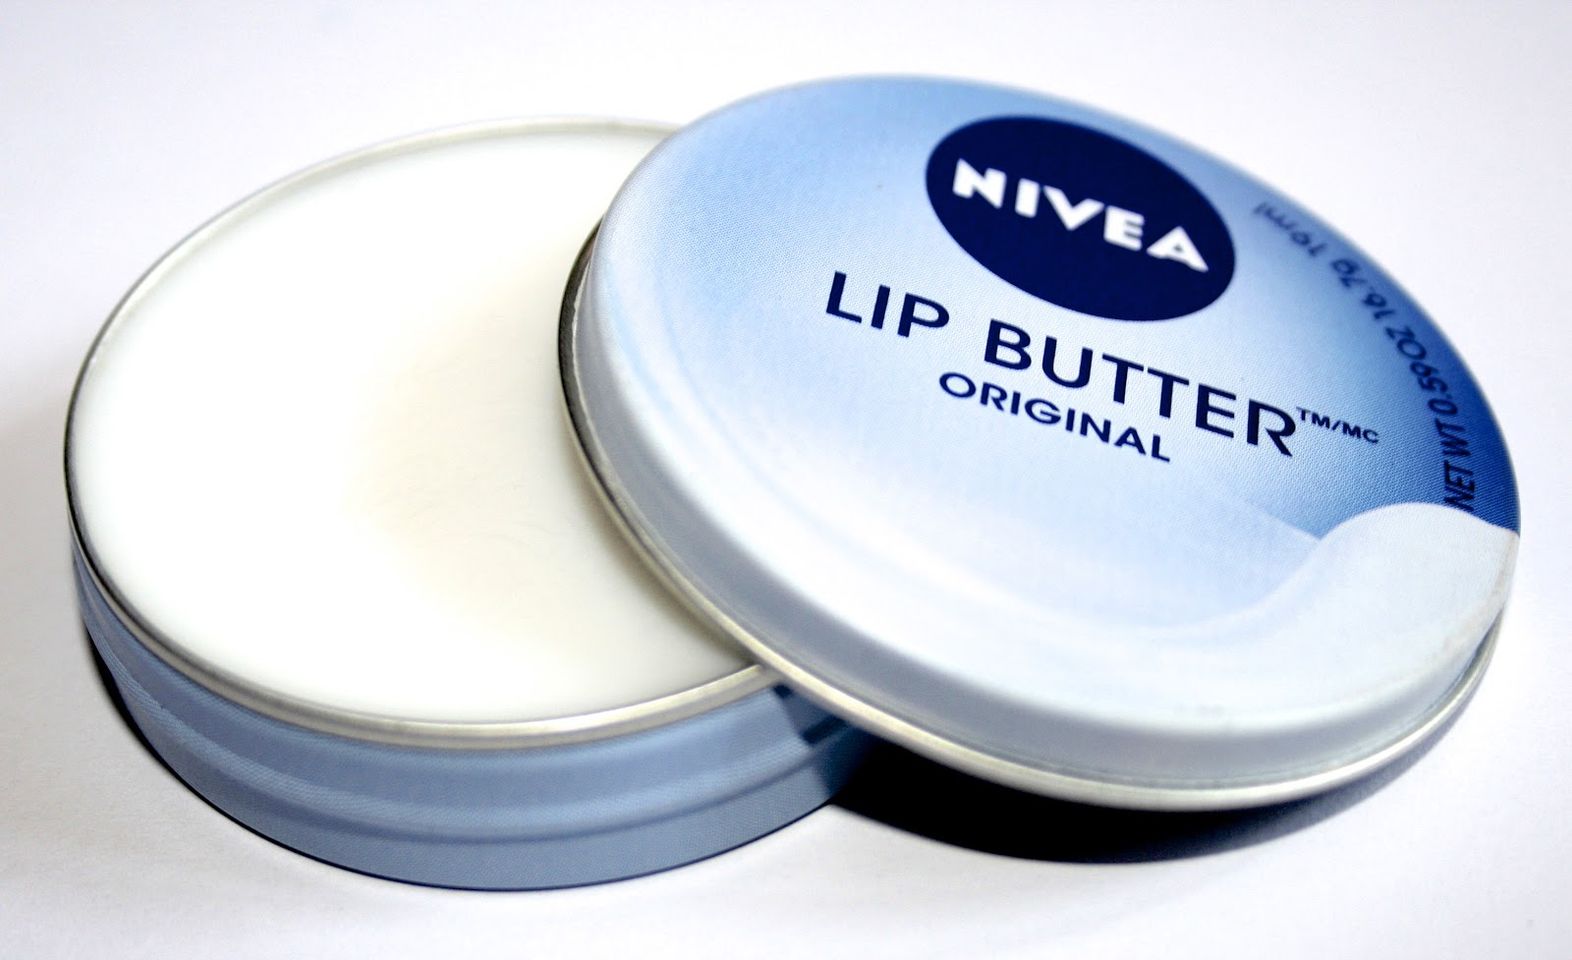 Son dưỡng môi Nivea Lip Butter thiết kế dạng hũ mới lạ, độc đáo